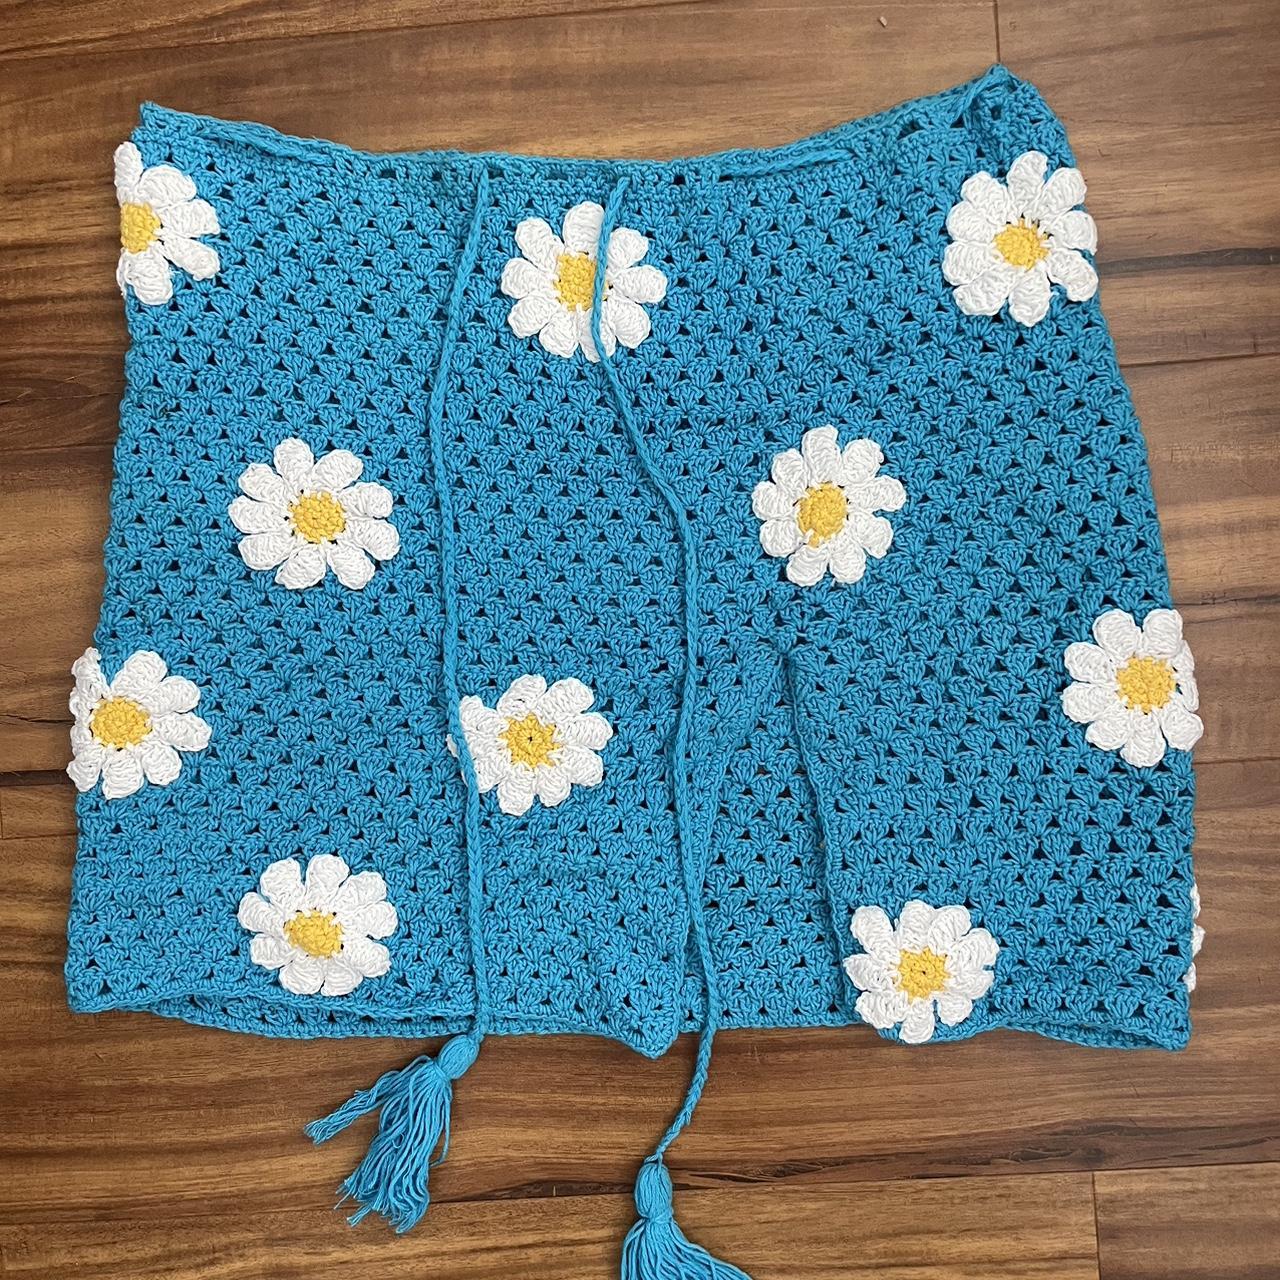 Crochet flower bikini skirt cover up. Crochet SET.... - Depop